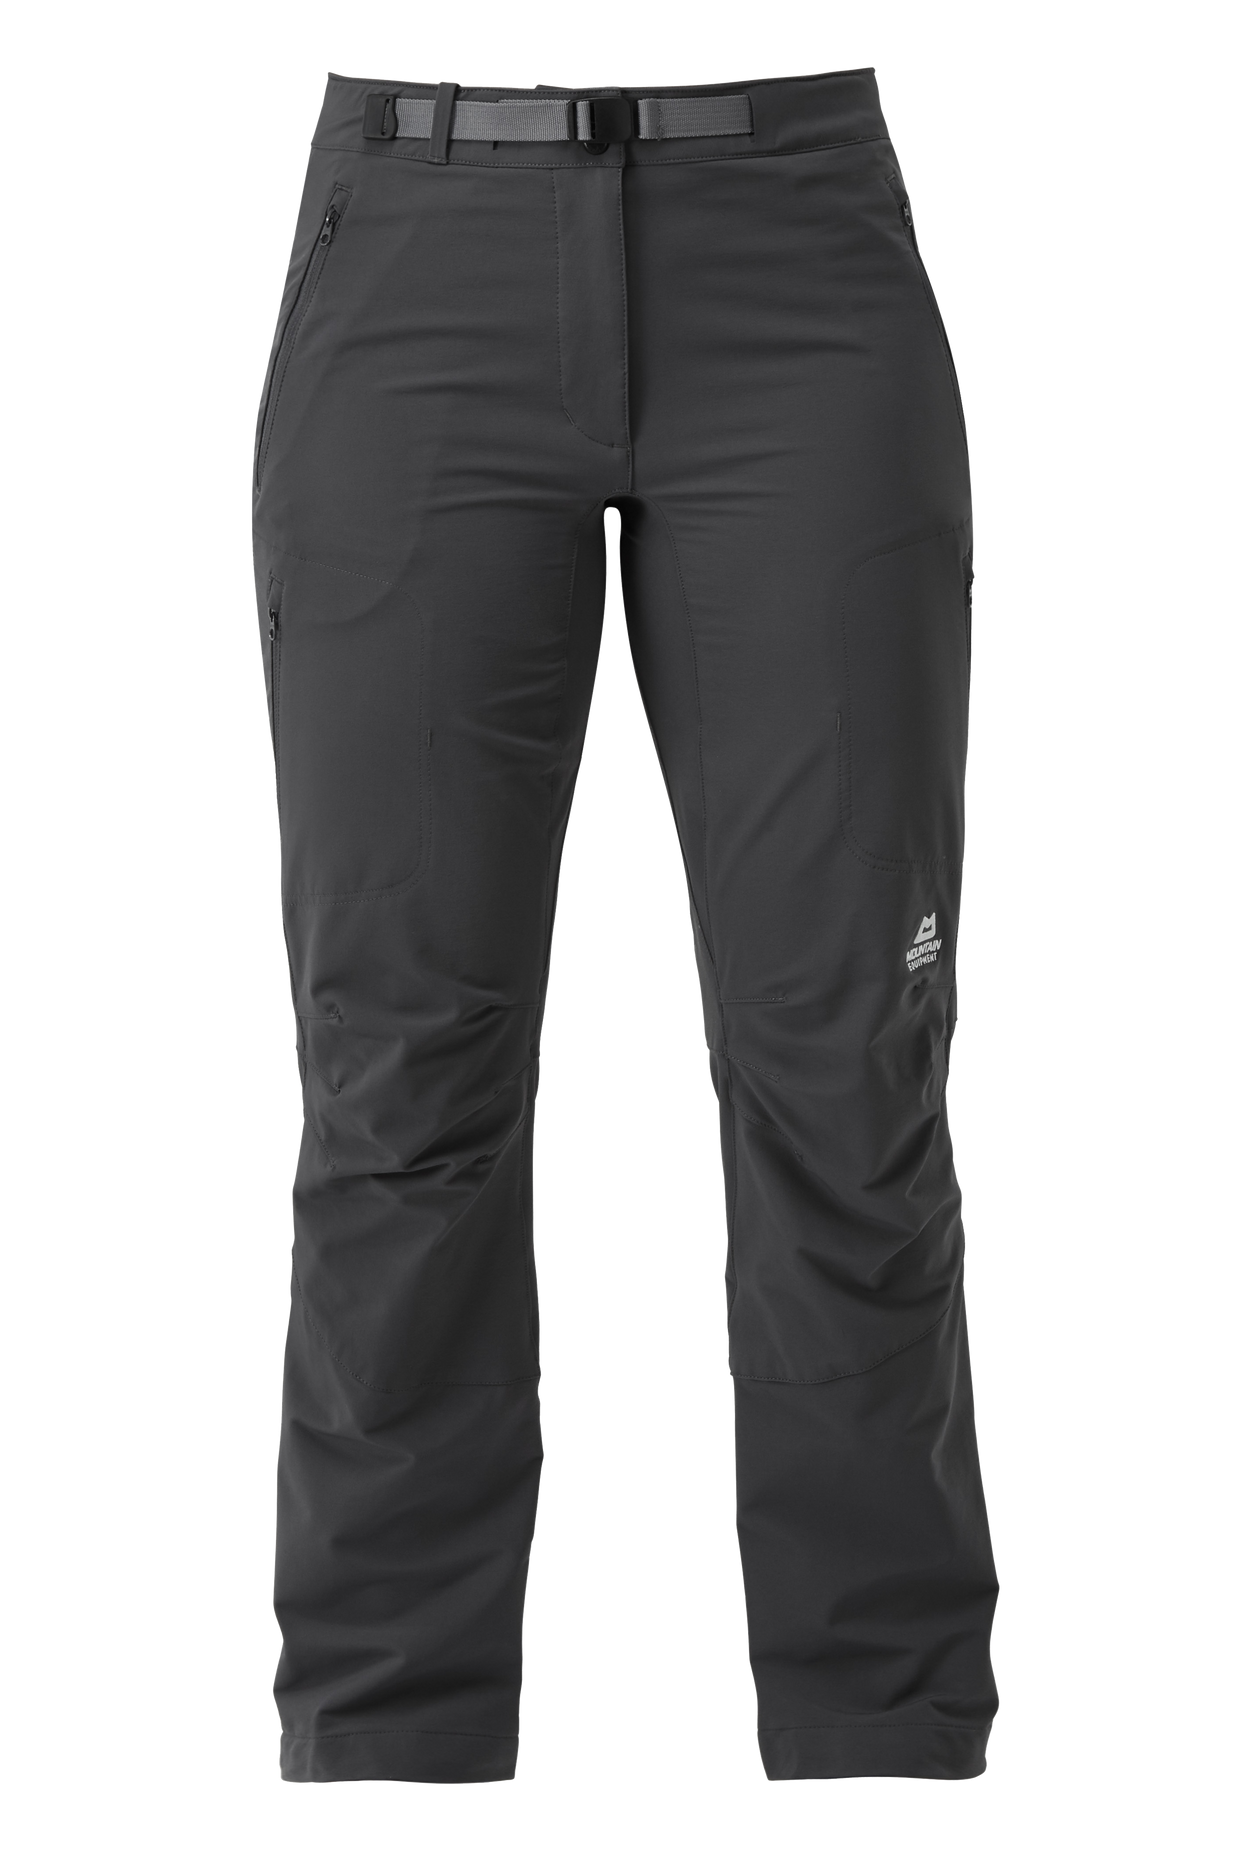 Mountain Equipment dámské softshellové kalhoty Chamois Wmns Pant - prodloužené Barva: Anvil Grey, Velikost: 14/L